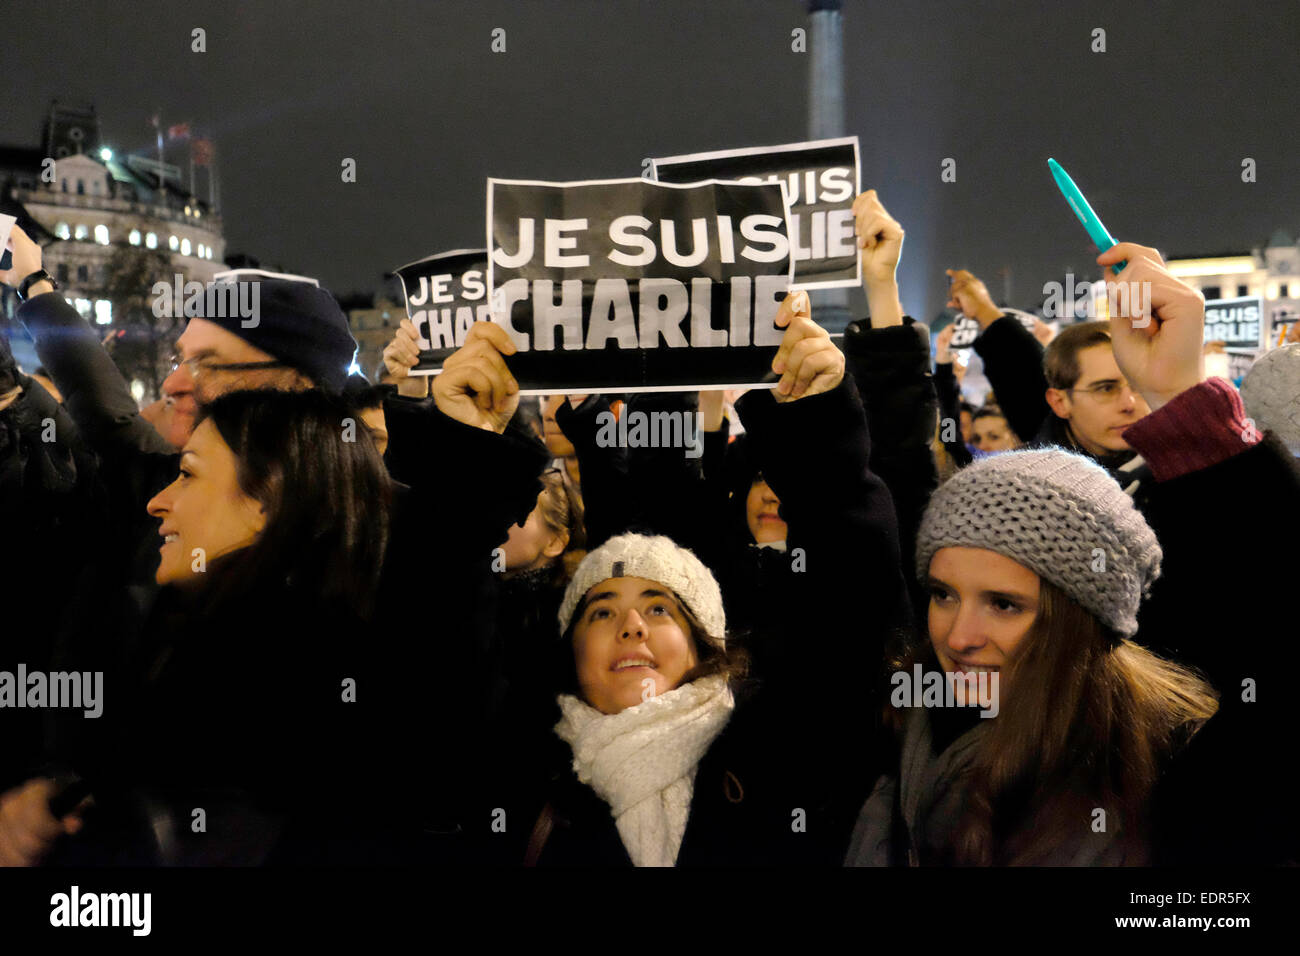 Una mujer sostiene un cartel que dice "Je suis Charlie', se traduce a soy Charlie. Foto de stock